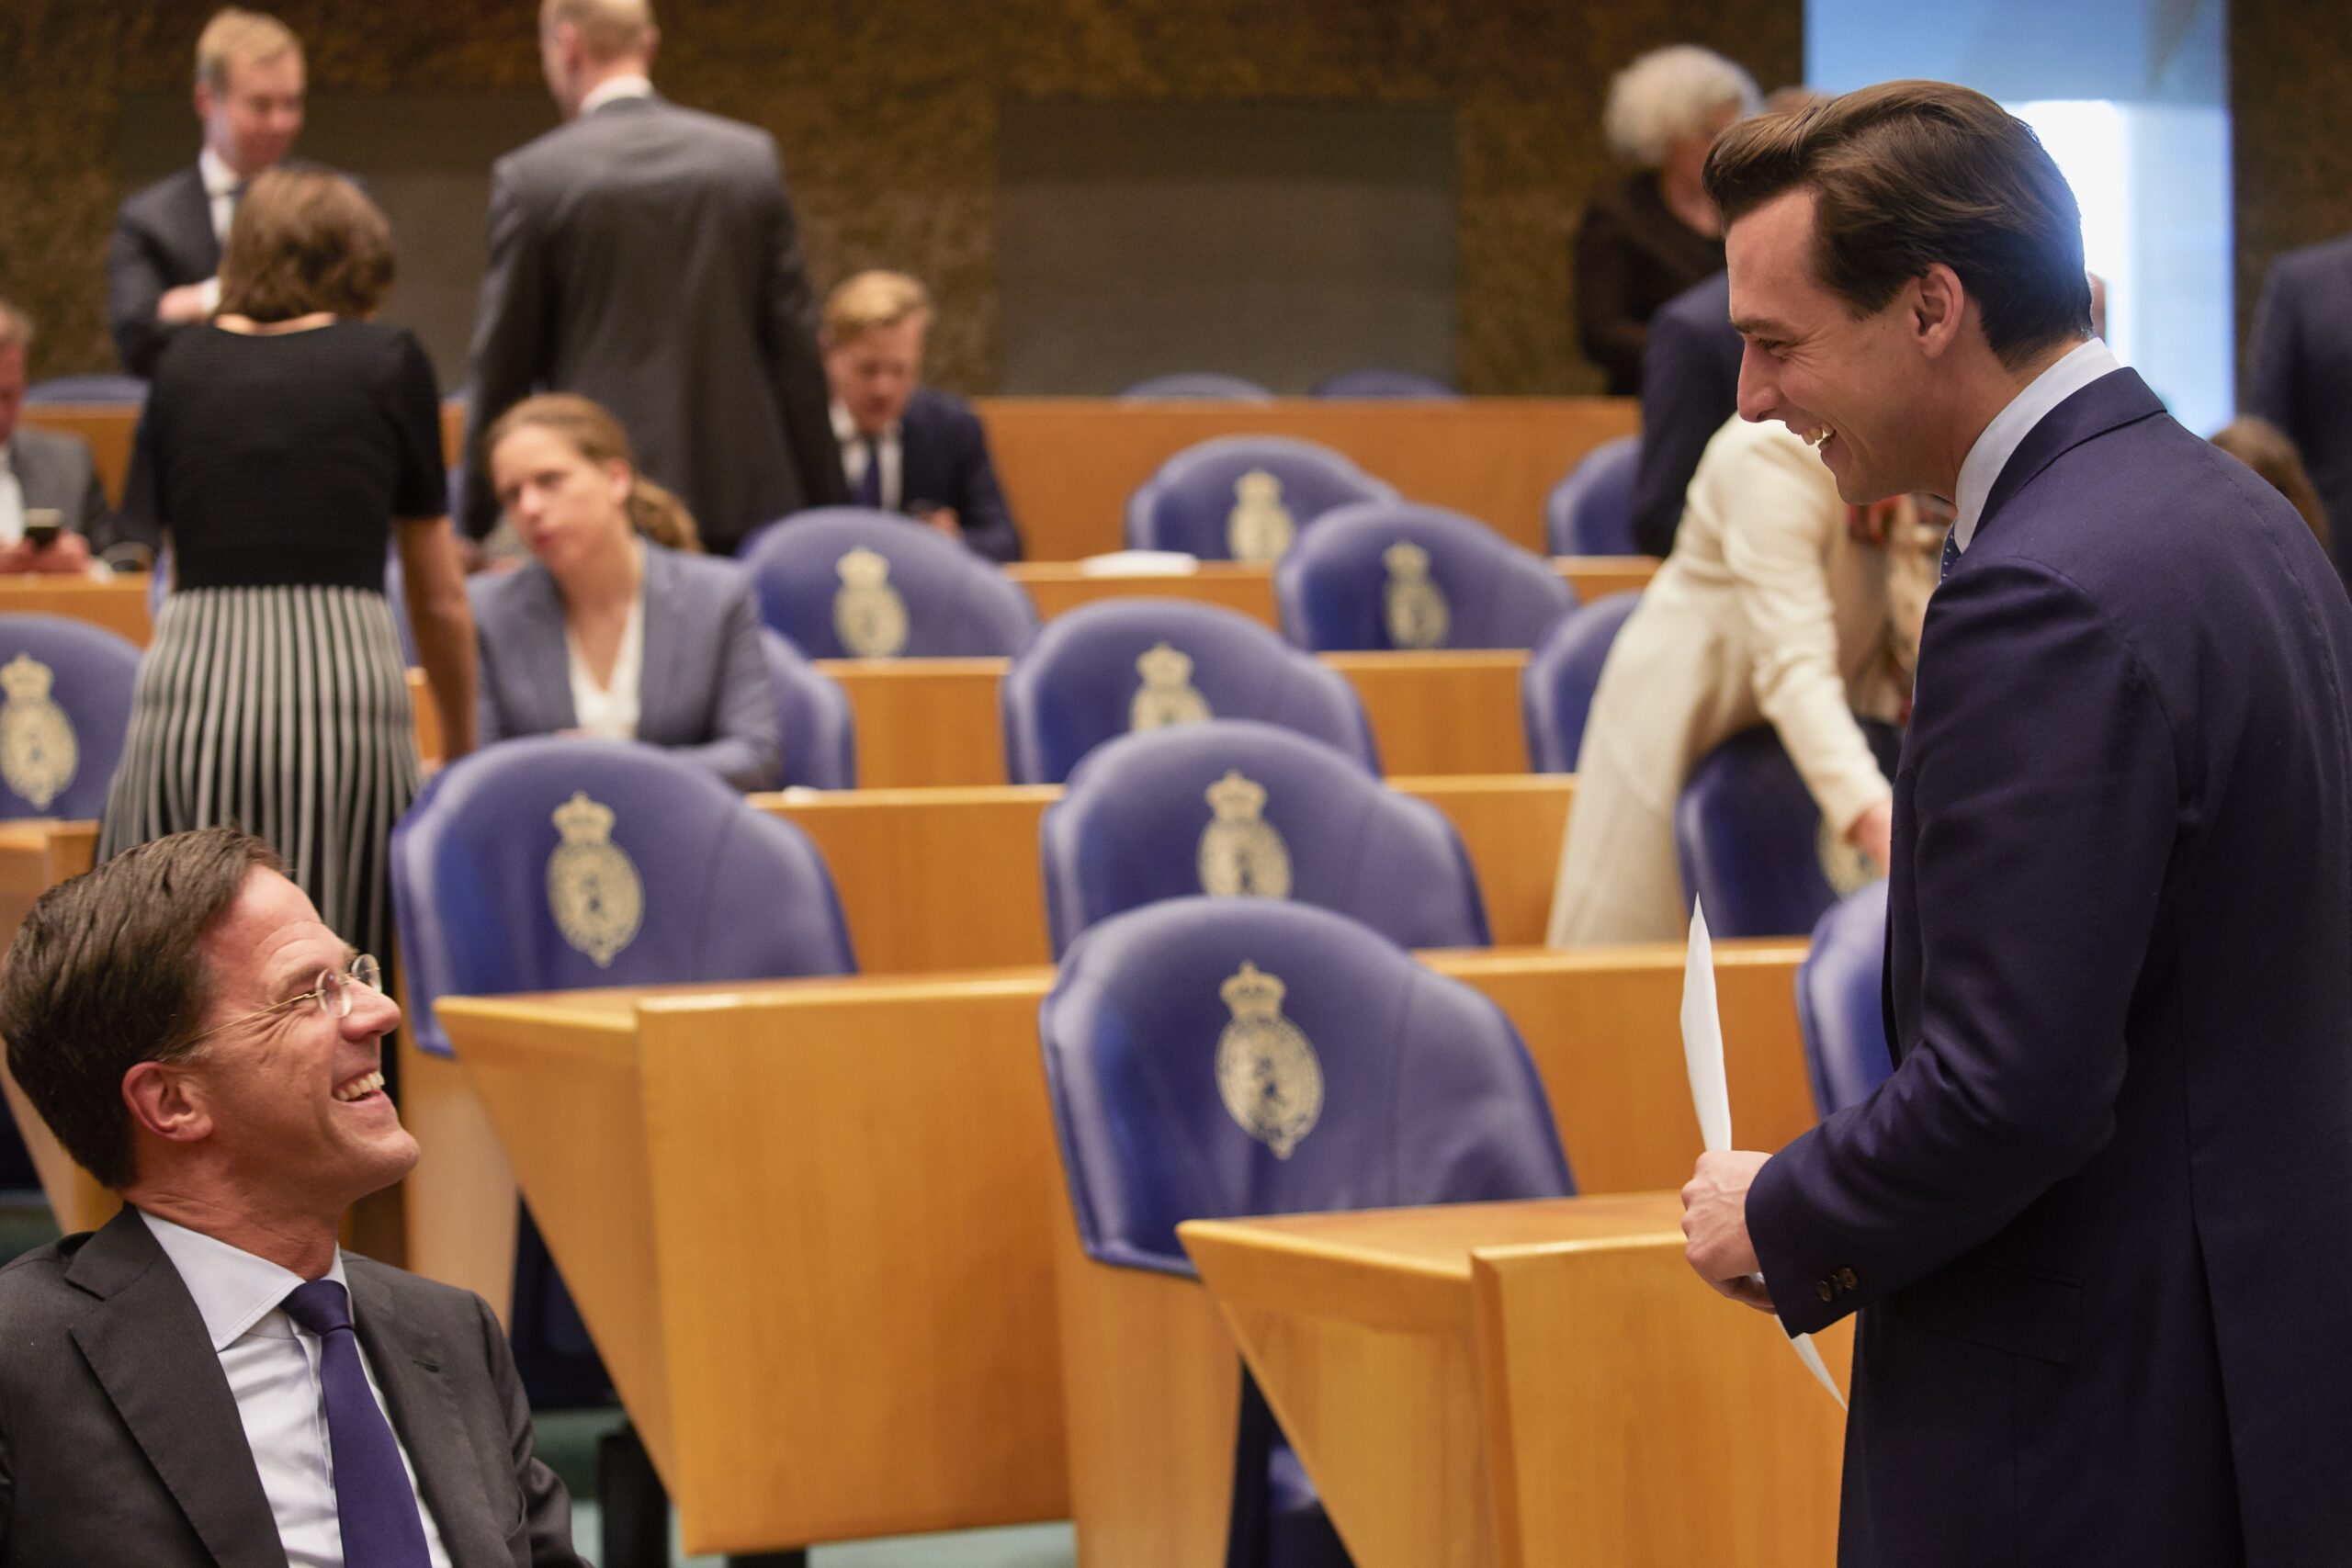 Thierry Baudet begroet Mark Rutte tijdens zijn eerste dag in de Tweede Kamer in maart 2017. Foto: Jaco Klamer